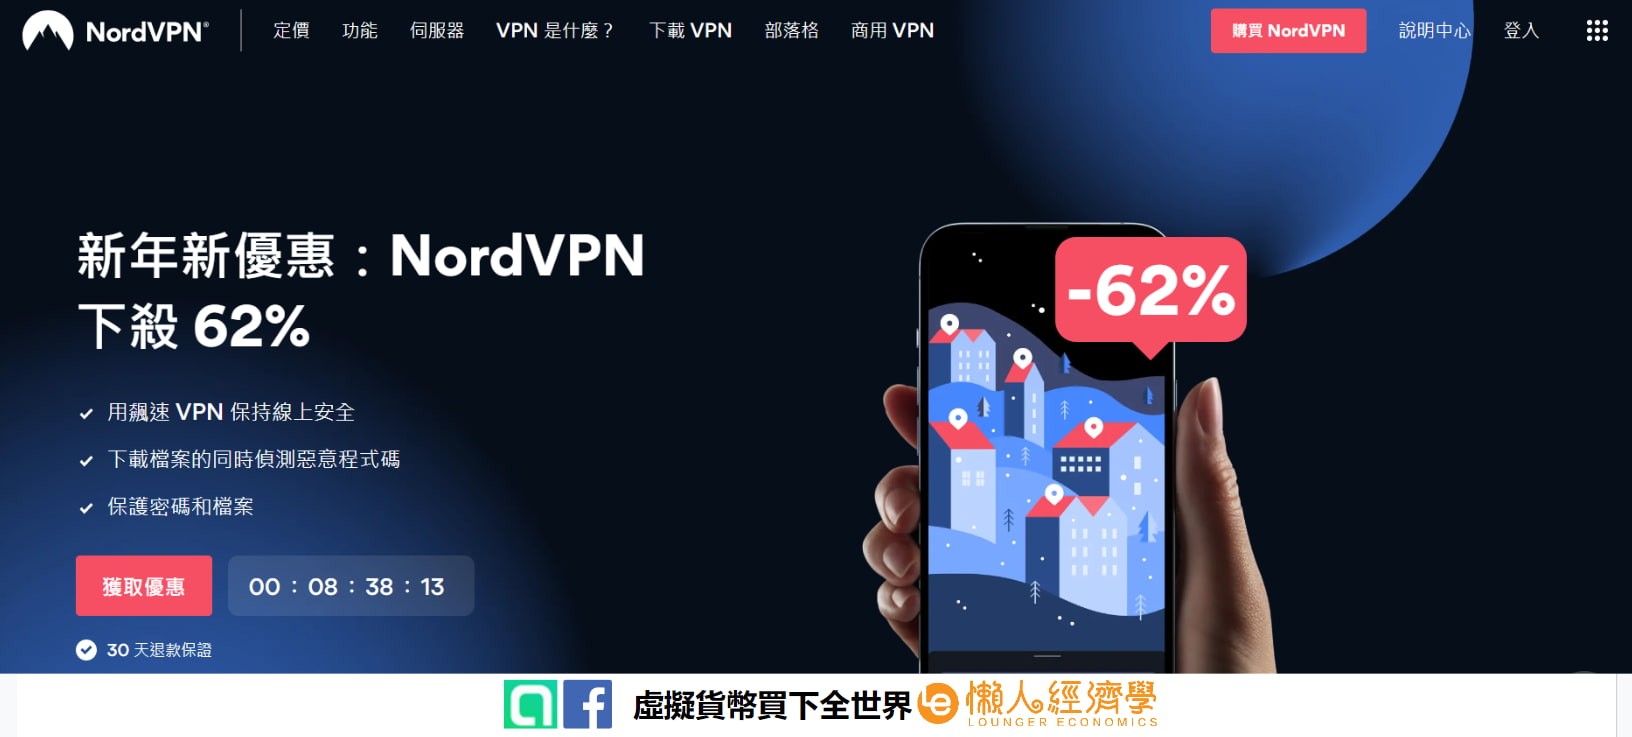 精選年度最佳 3 款 VPN 